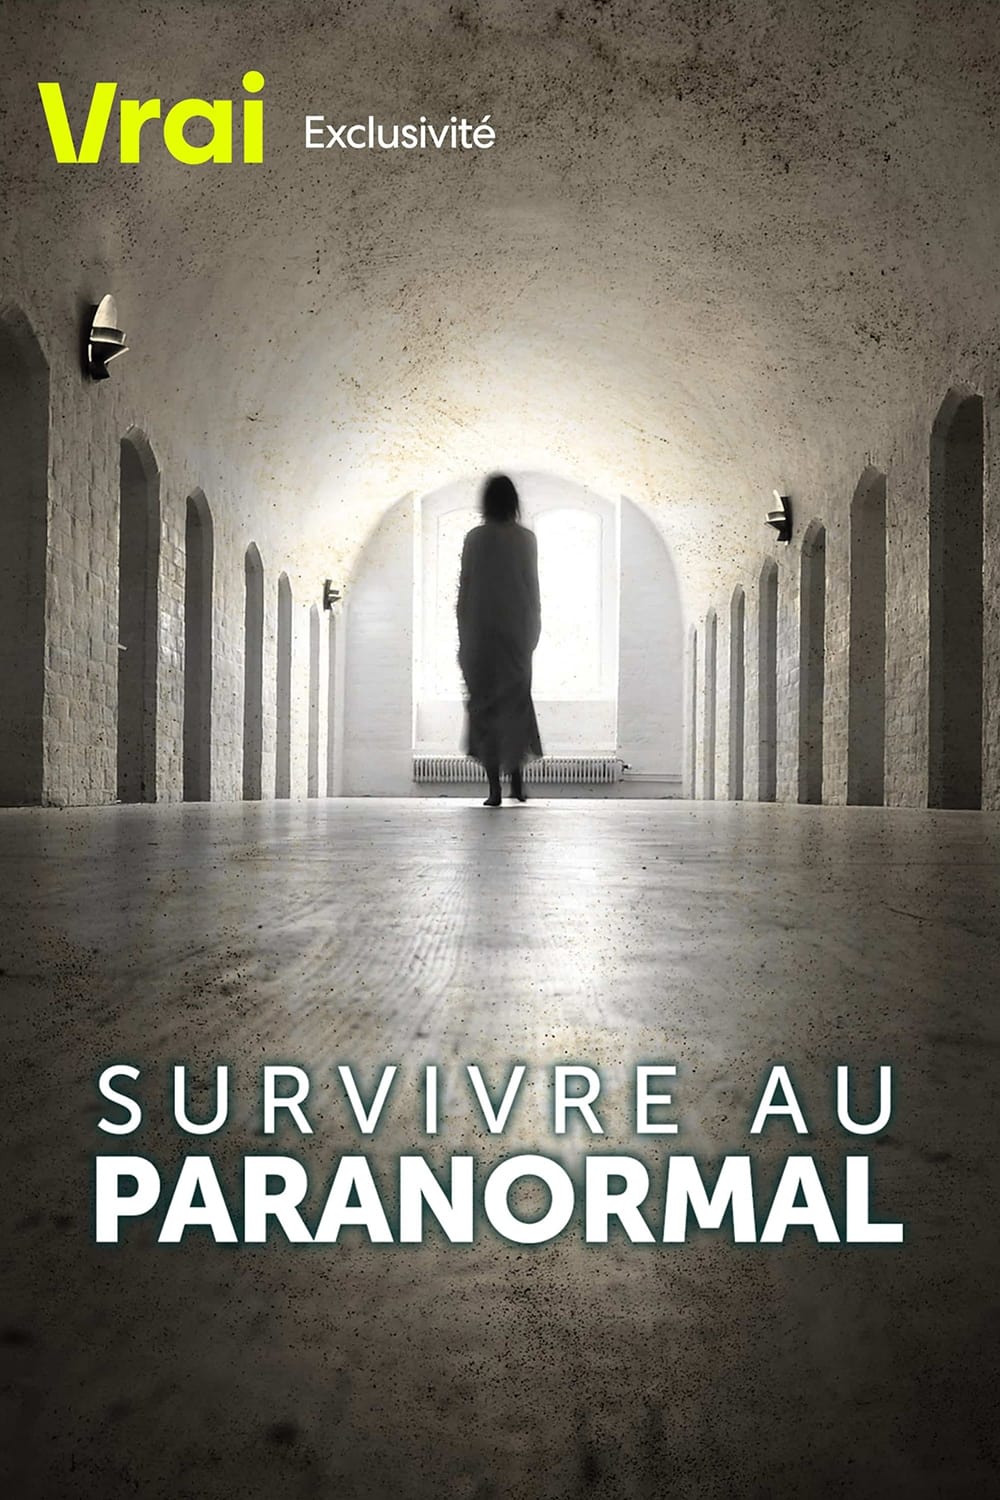 Affiche de la série Paranormal Survivor poster